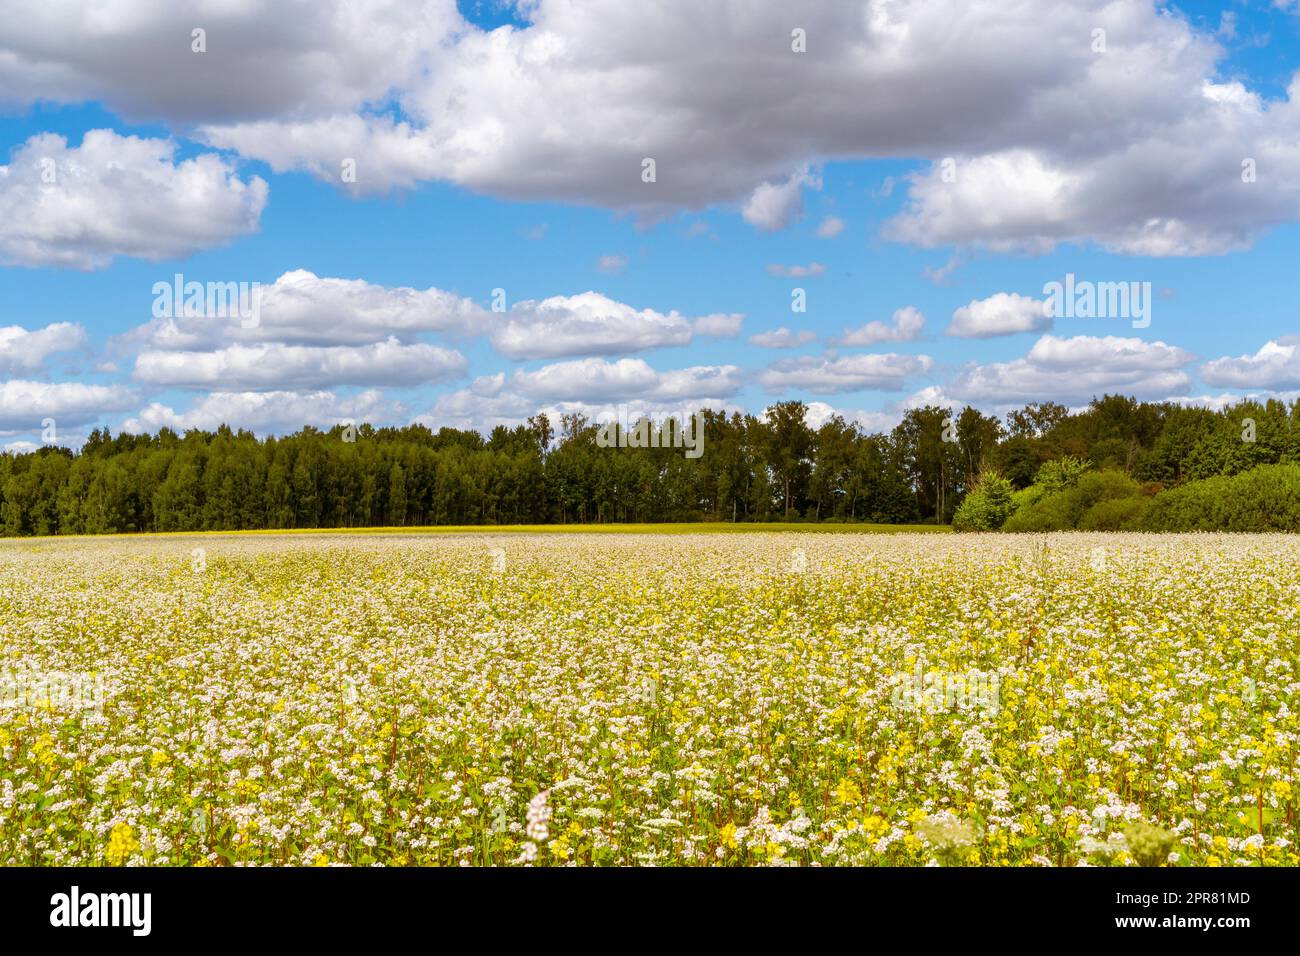 Wide field of flowering buckwheat in summer Stock Photo